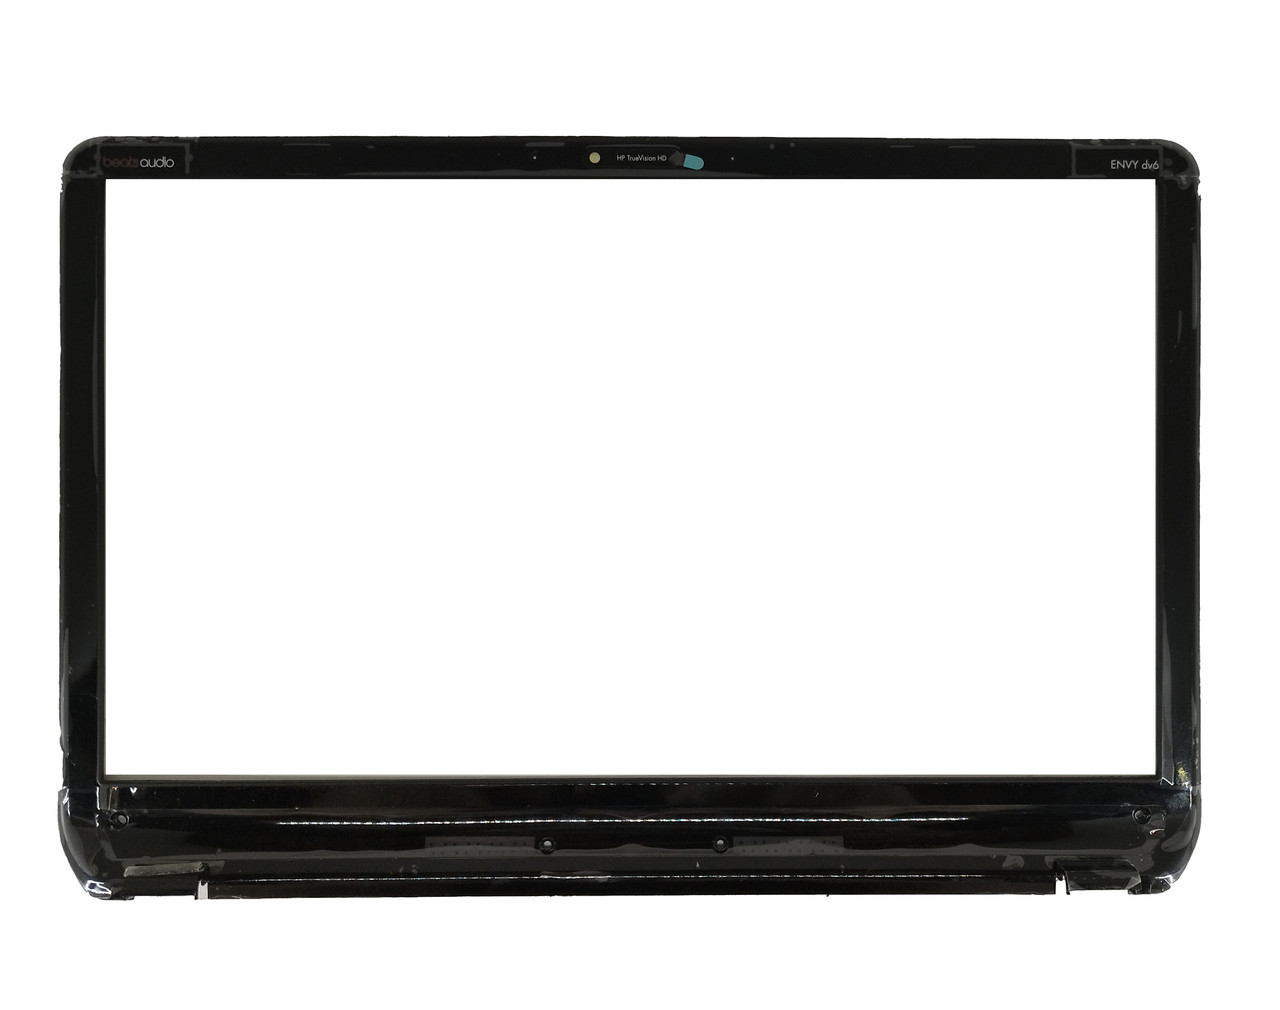 Рамка крышки матрицы HP Pavilion DV6-6000, черная